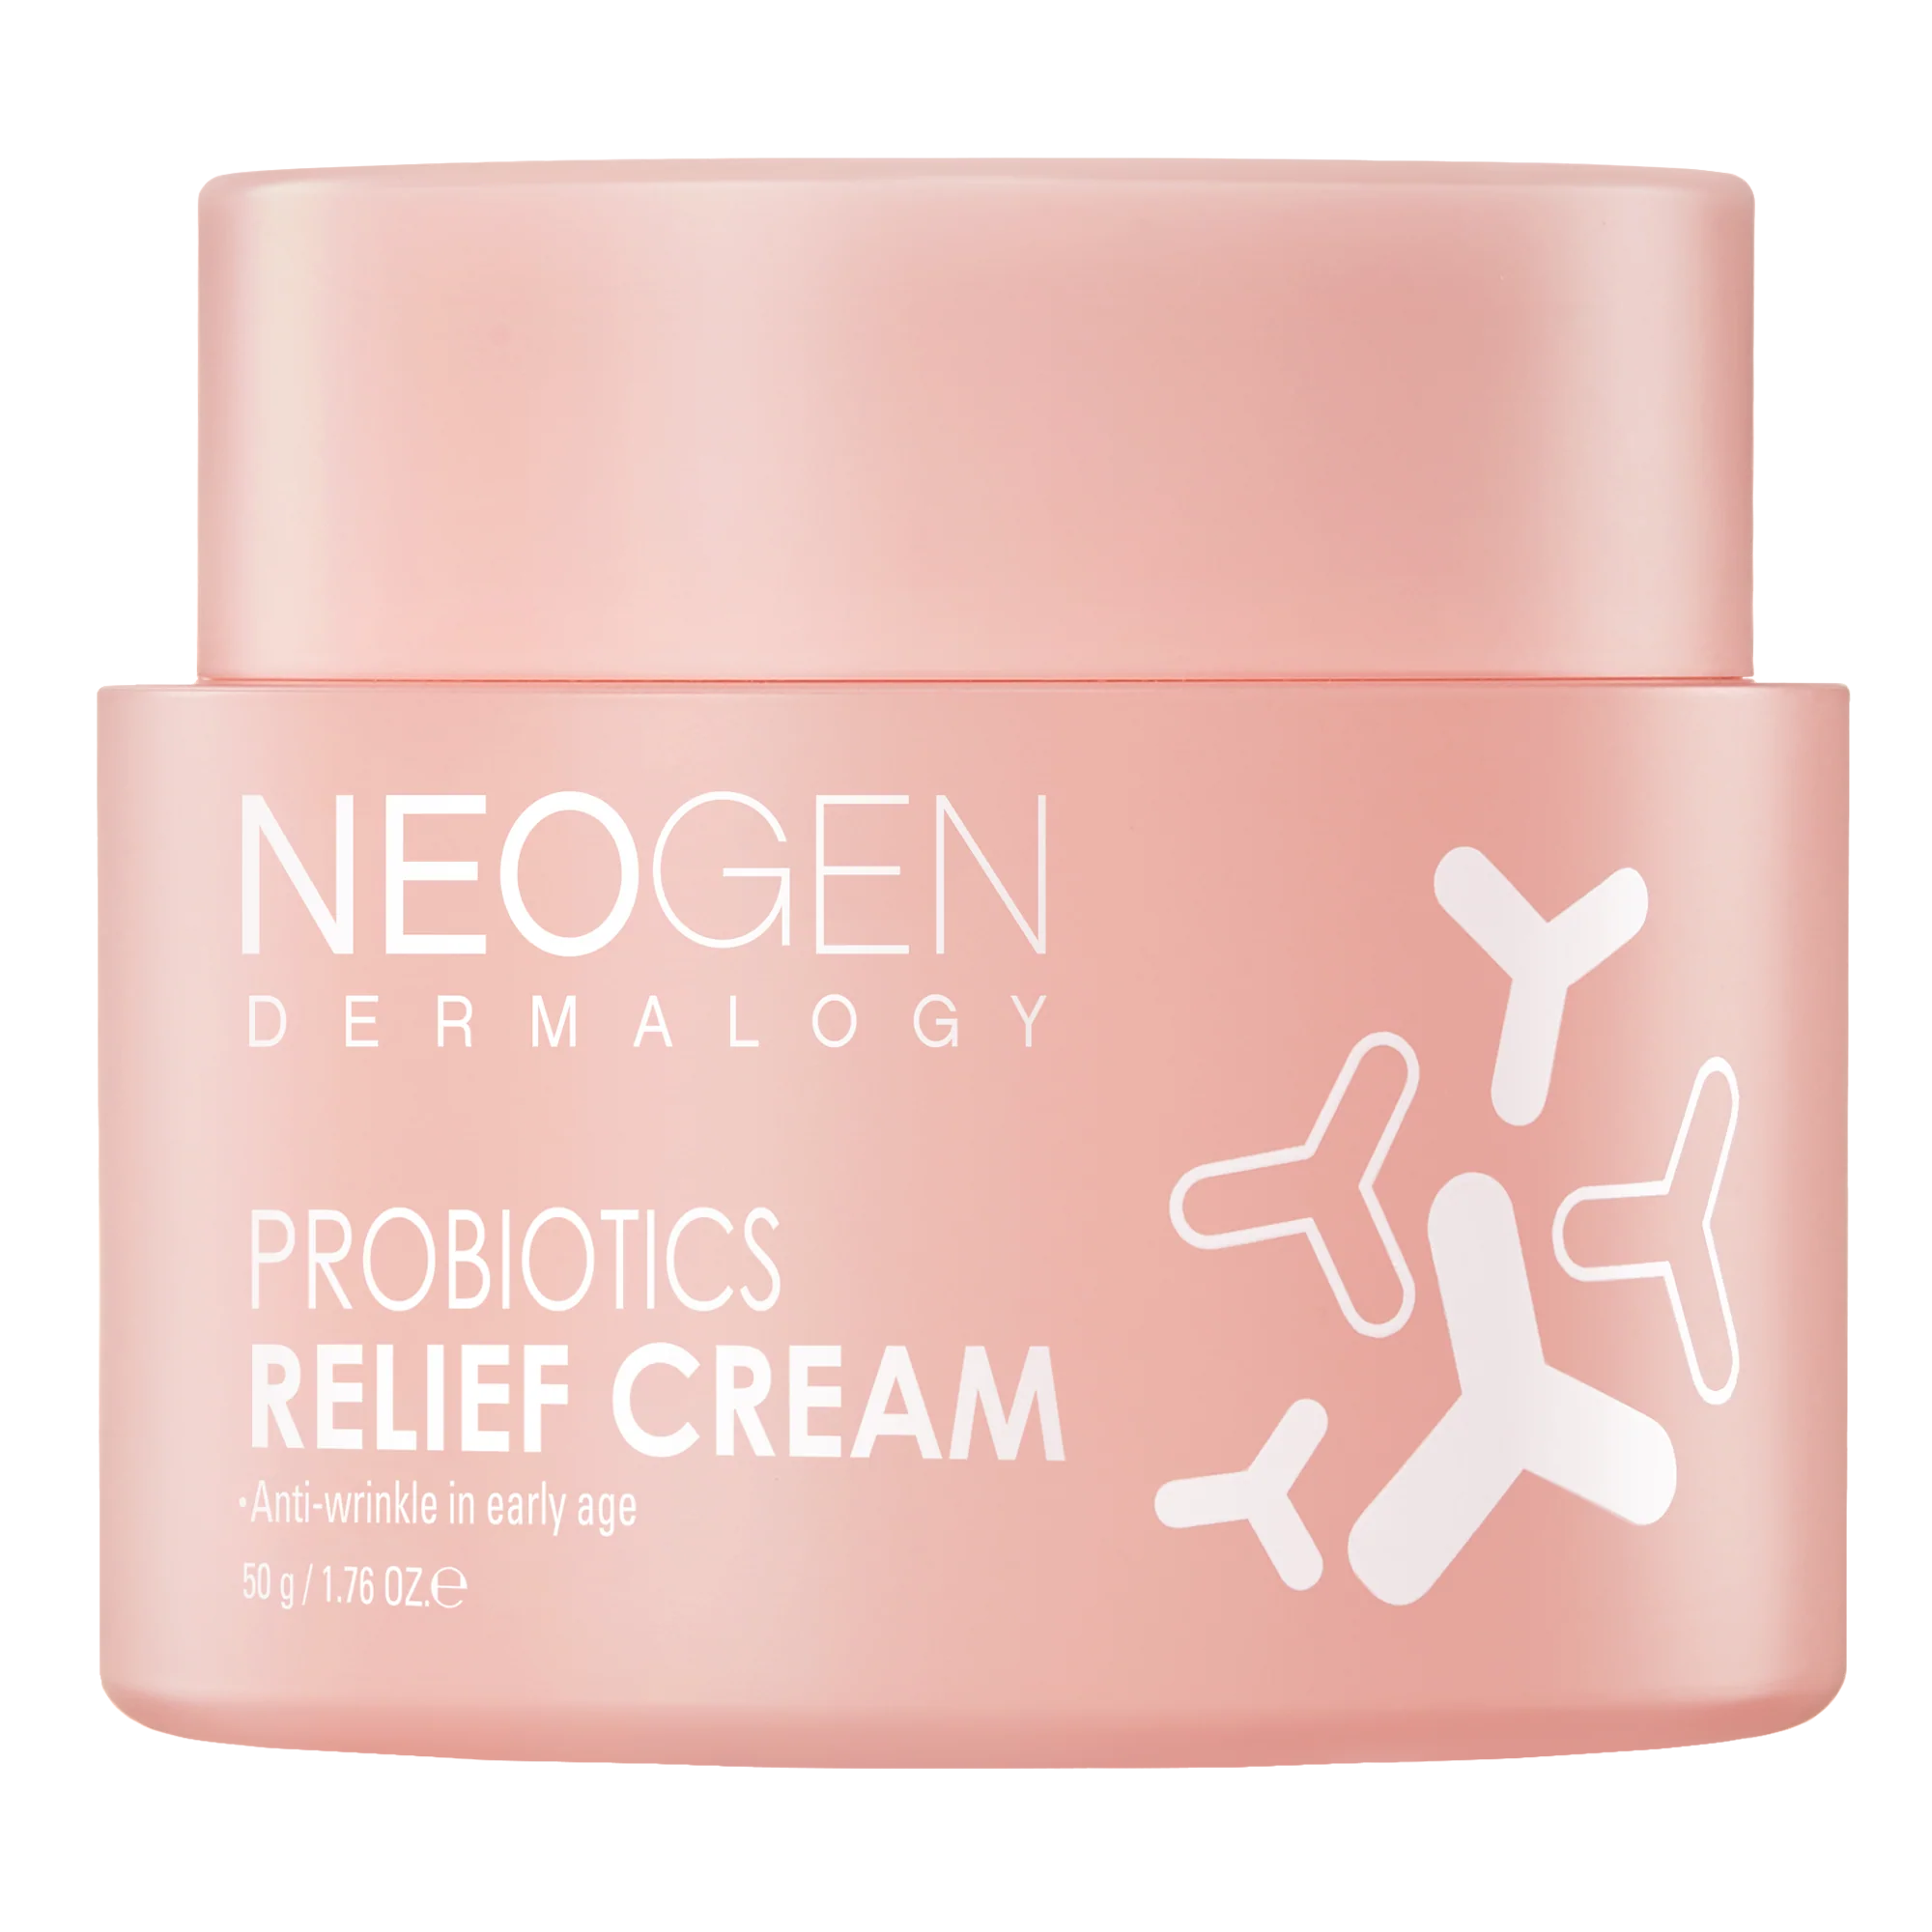 NEOGEN DERMALOGY - Probiotics Relief Cream